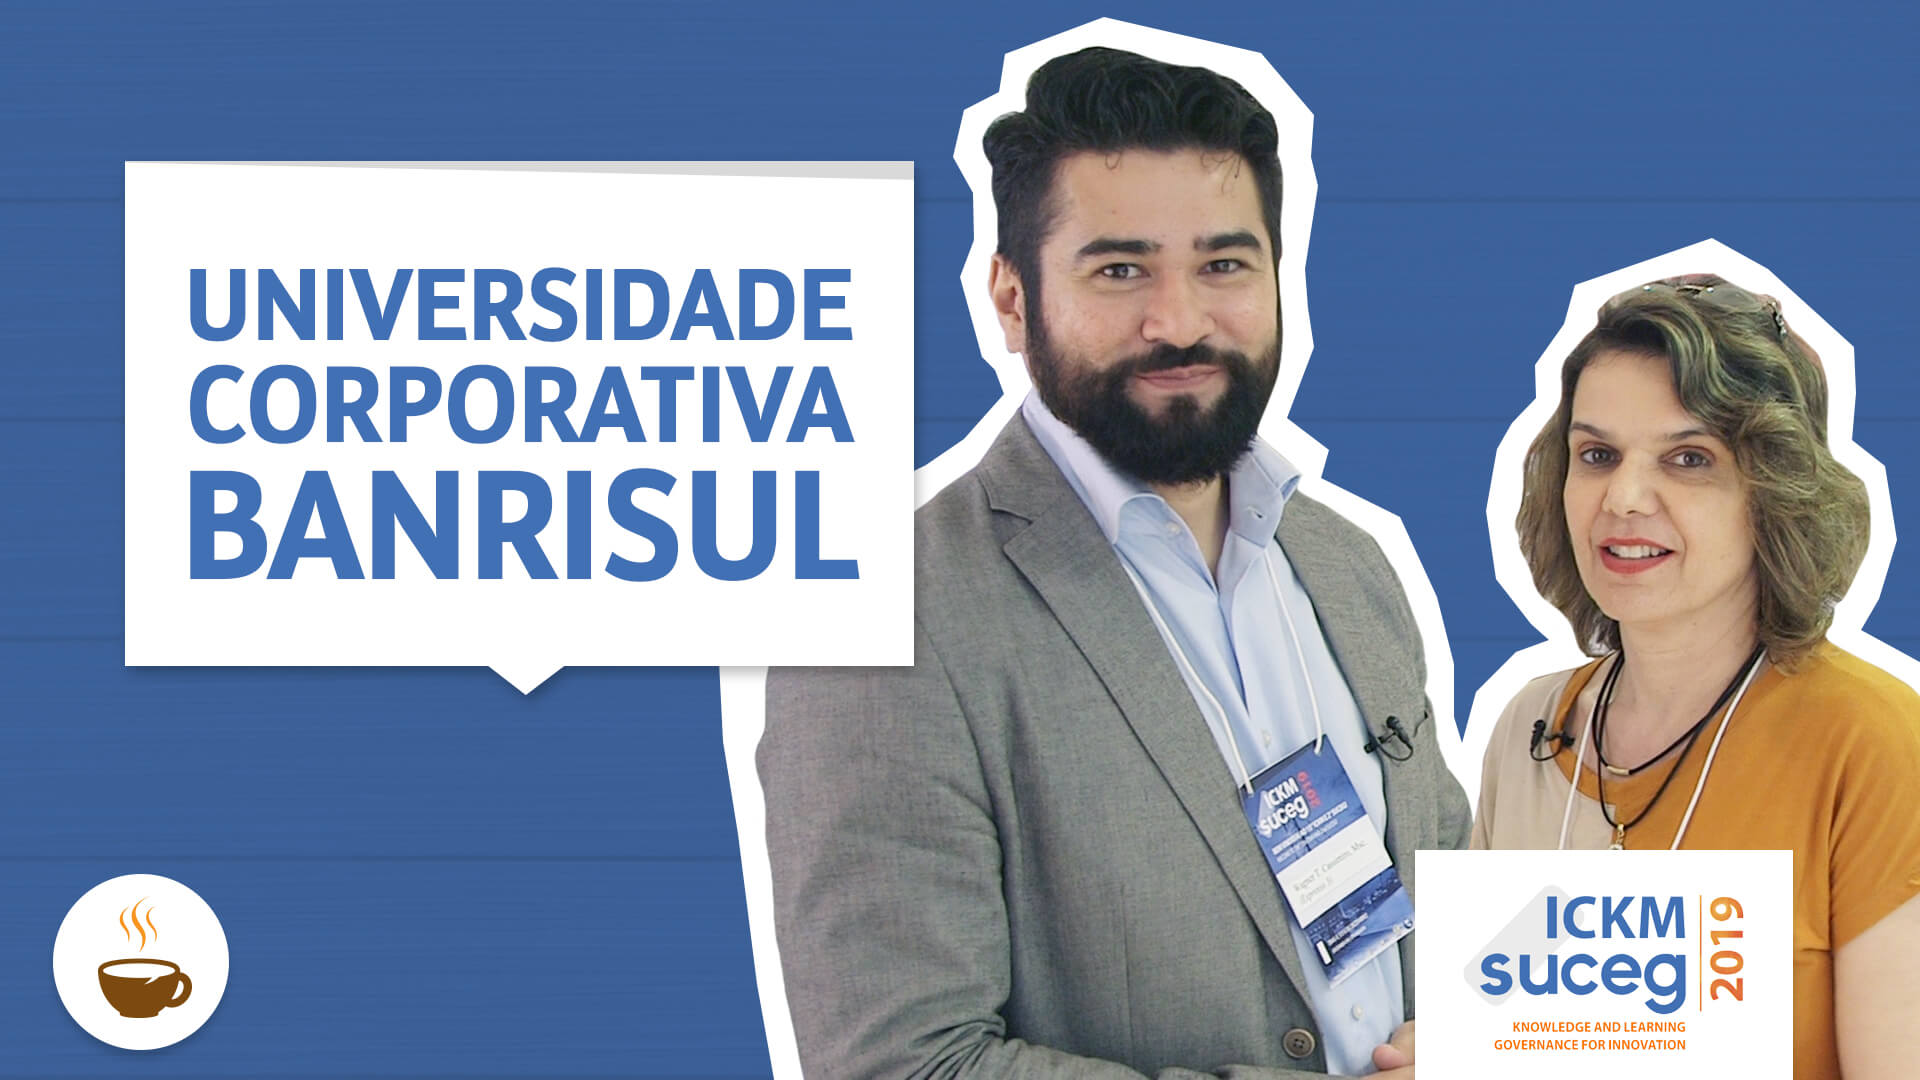 Wagner Cassimiro entrevista Marta Neves do Banrisul sobre Universidade corporativa Banrisul 